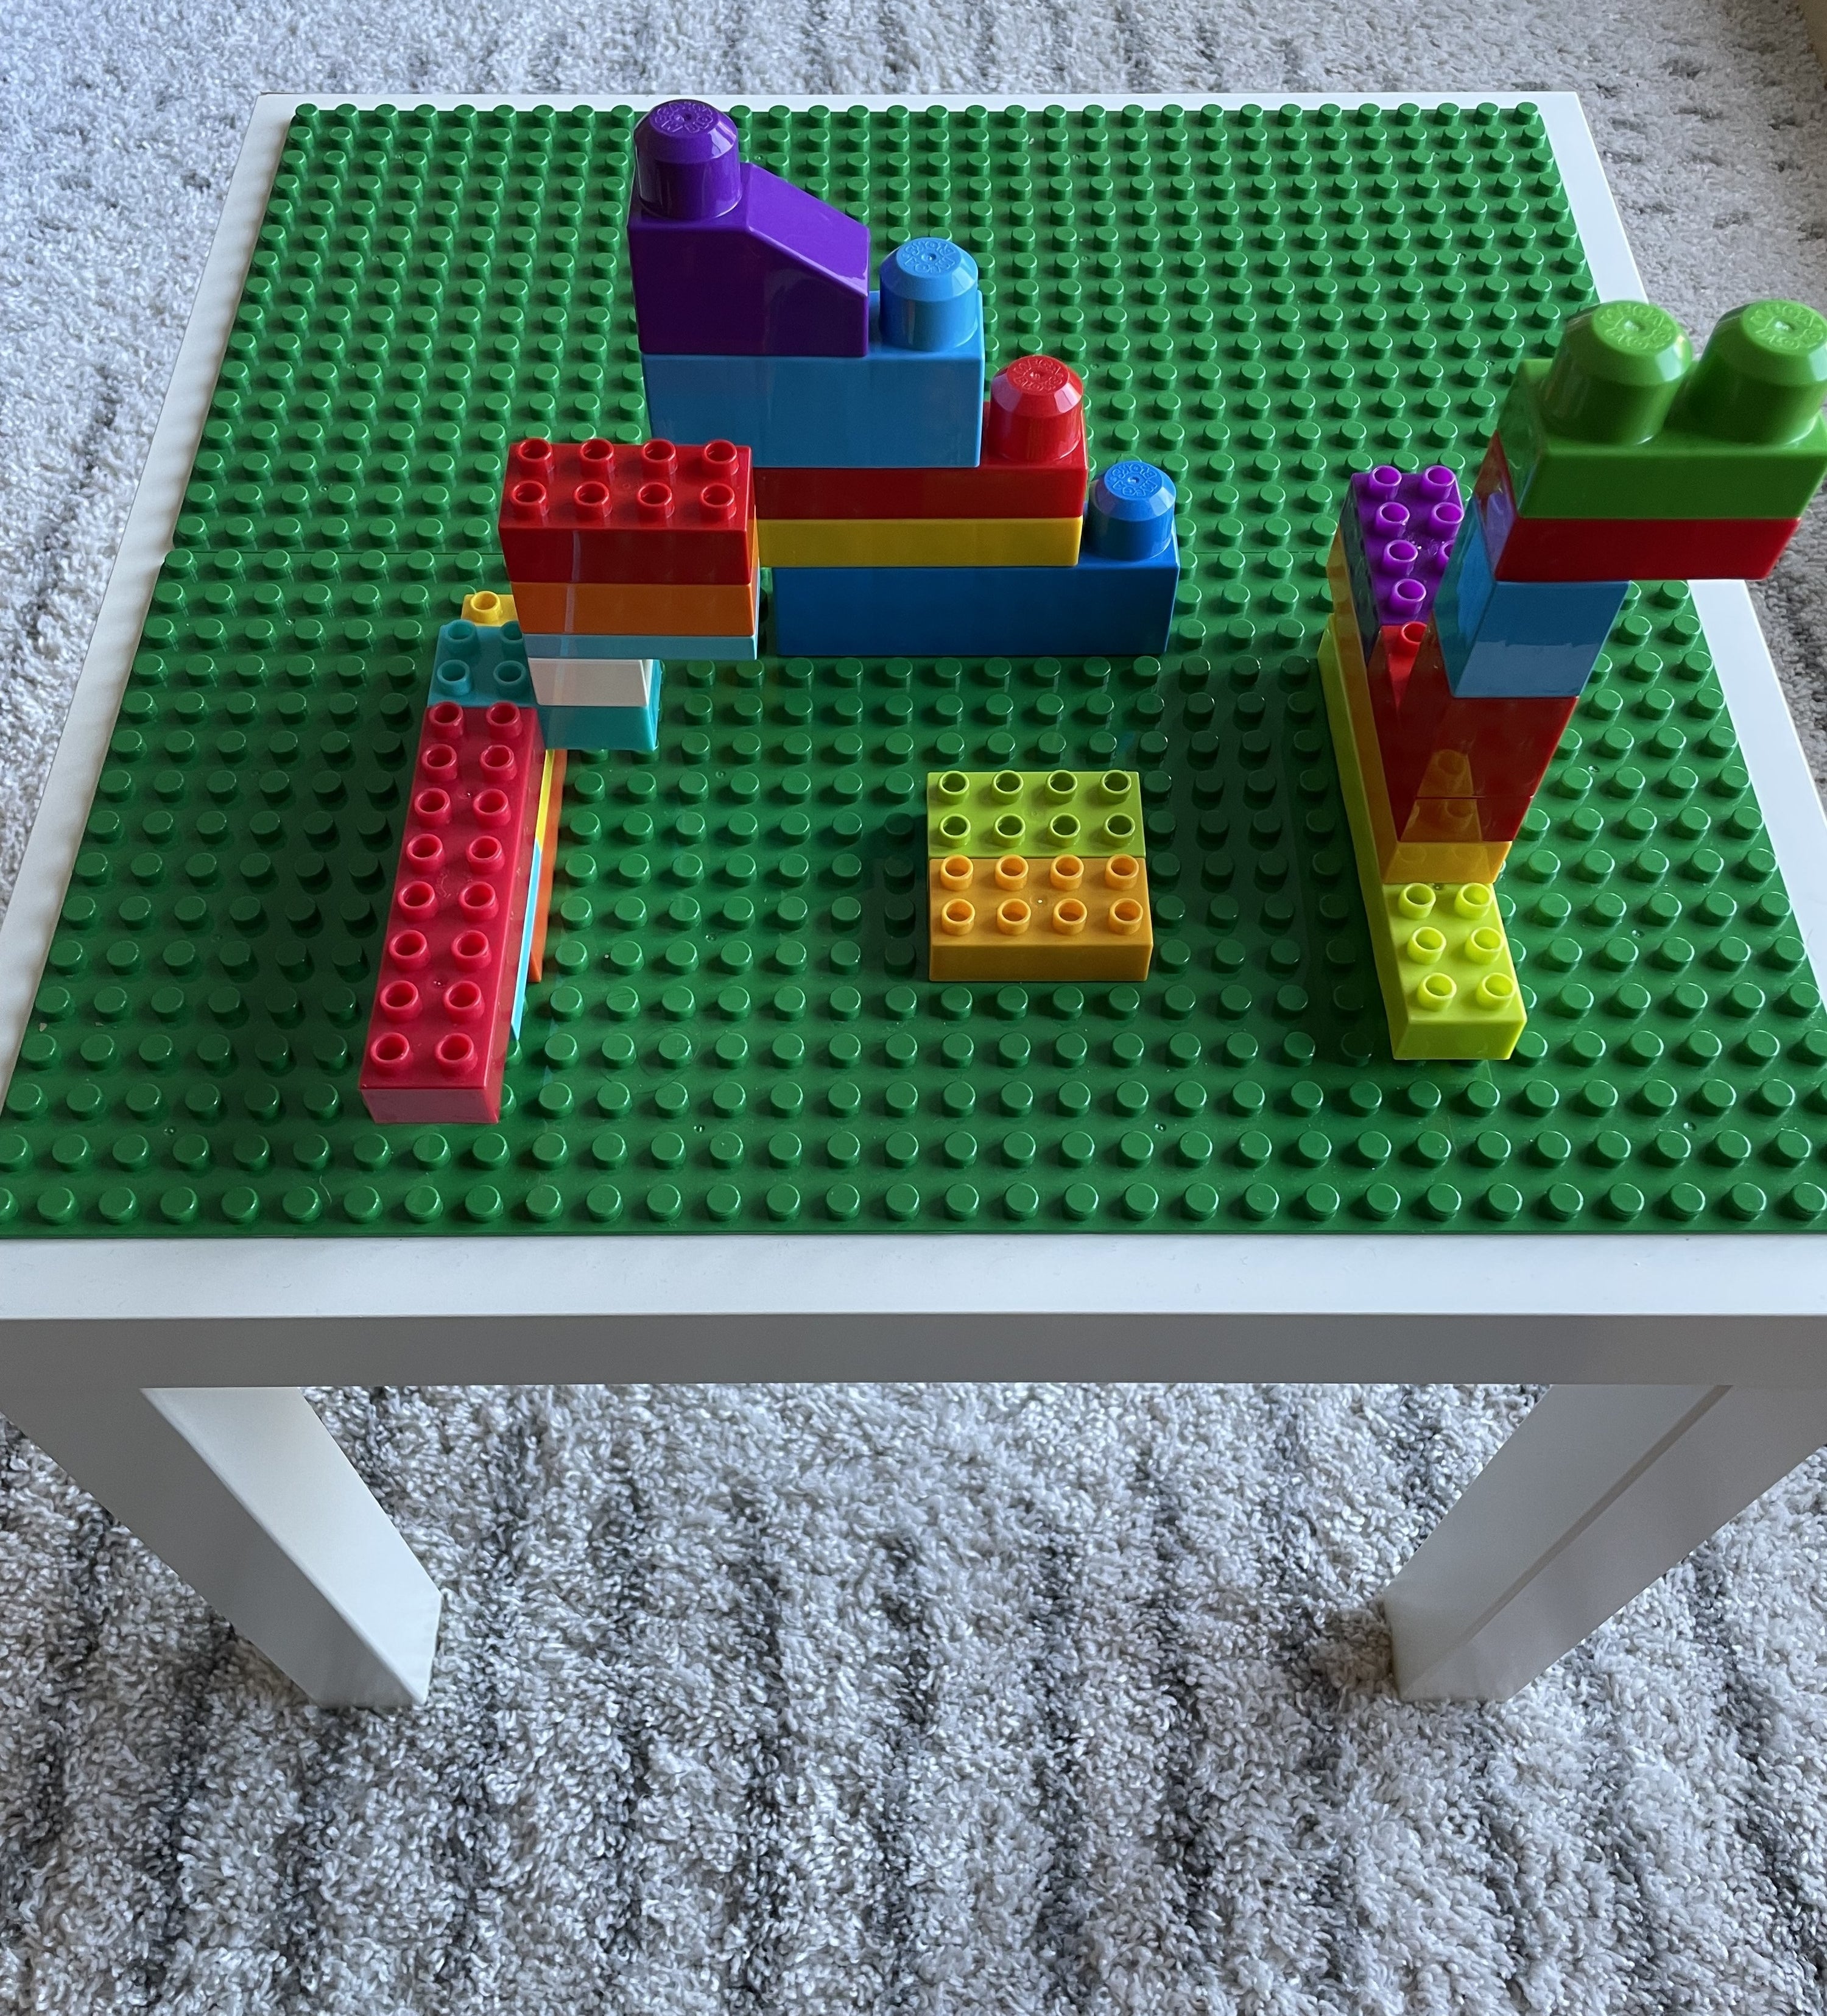 The DIY Lego table